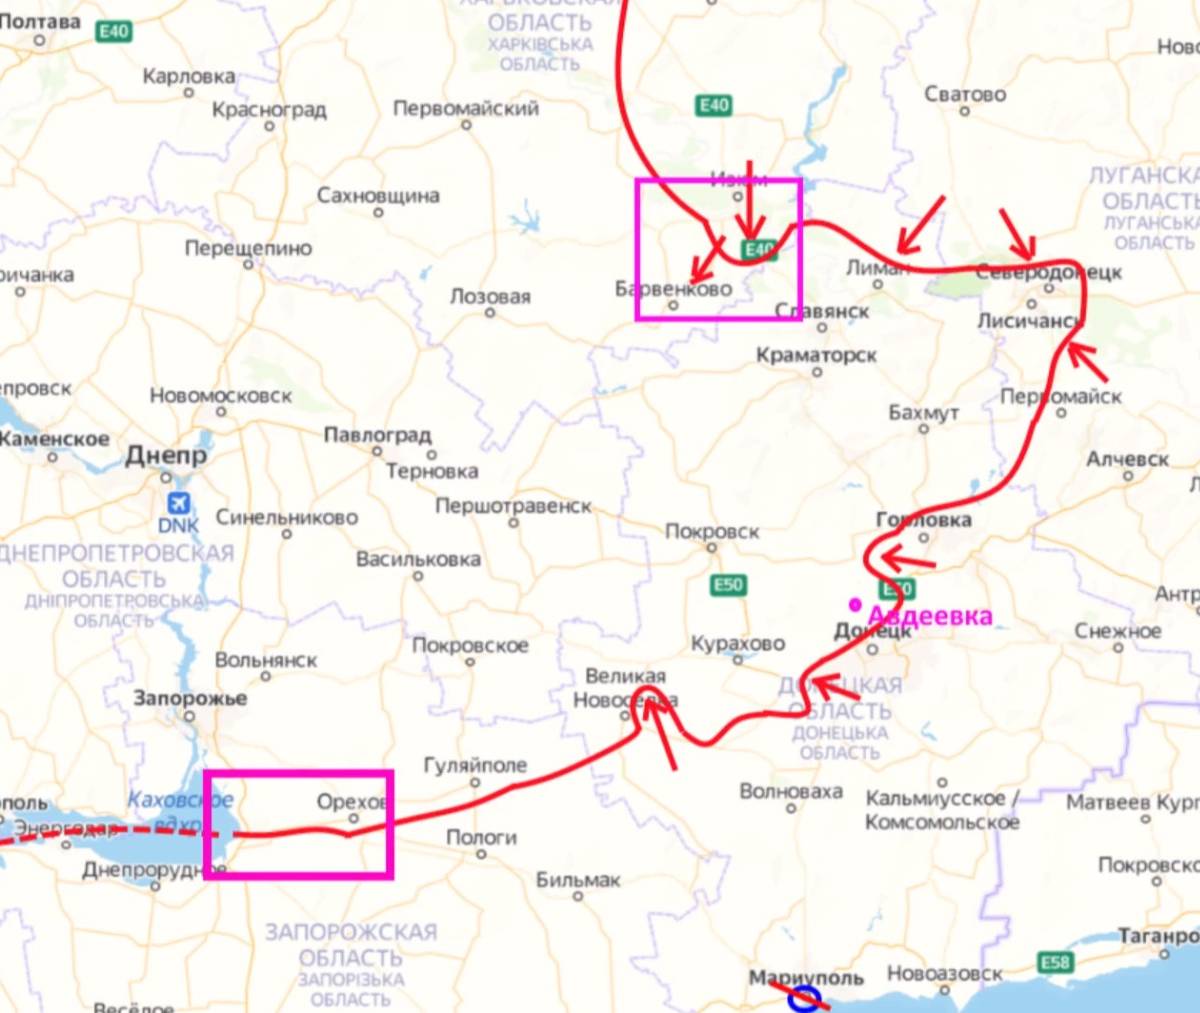 Украинцы сообщают о начале операции РФ по замыканию «Донбасского котла»